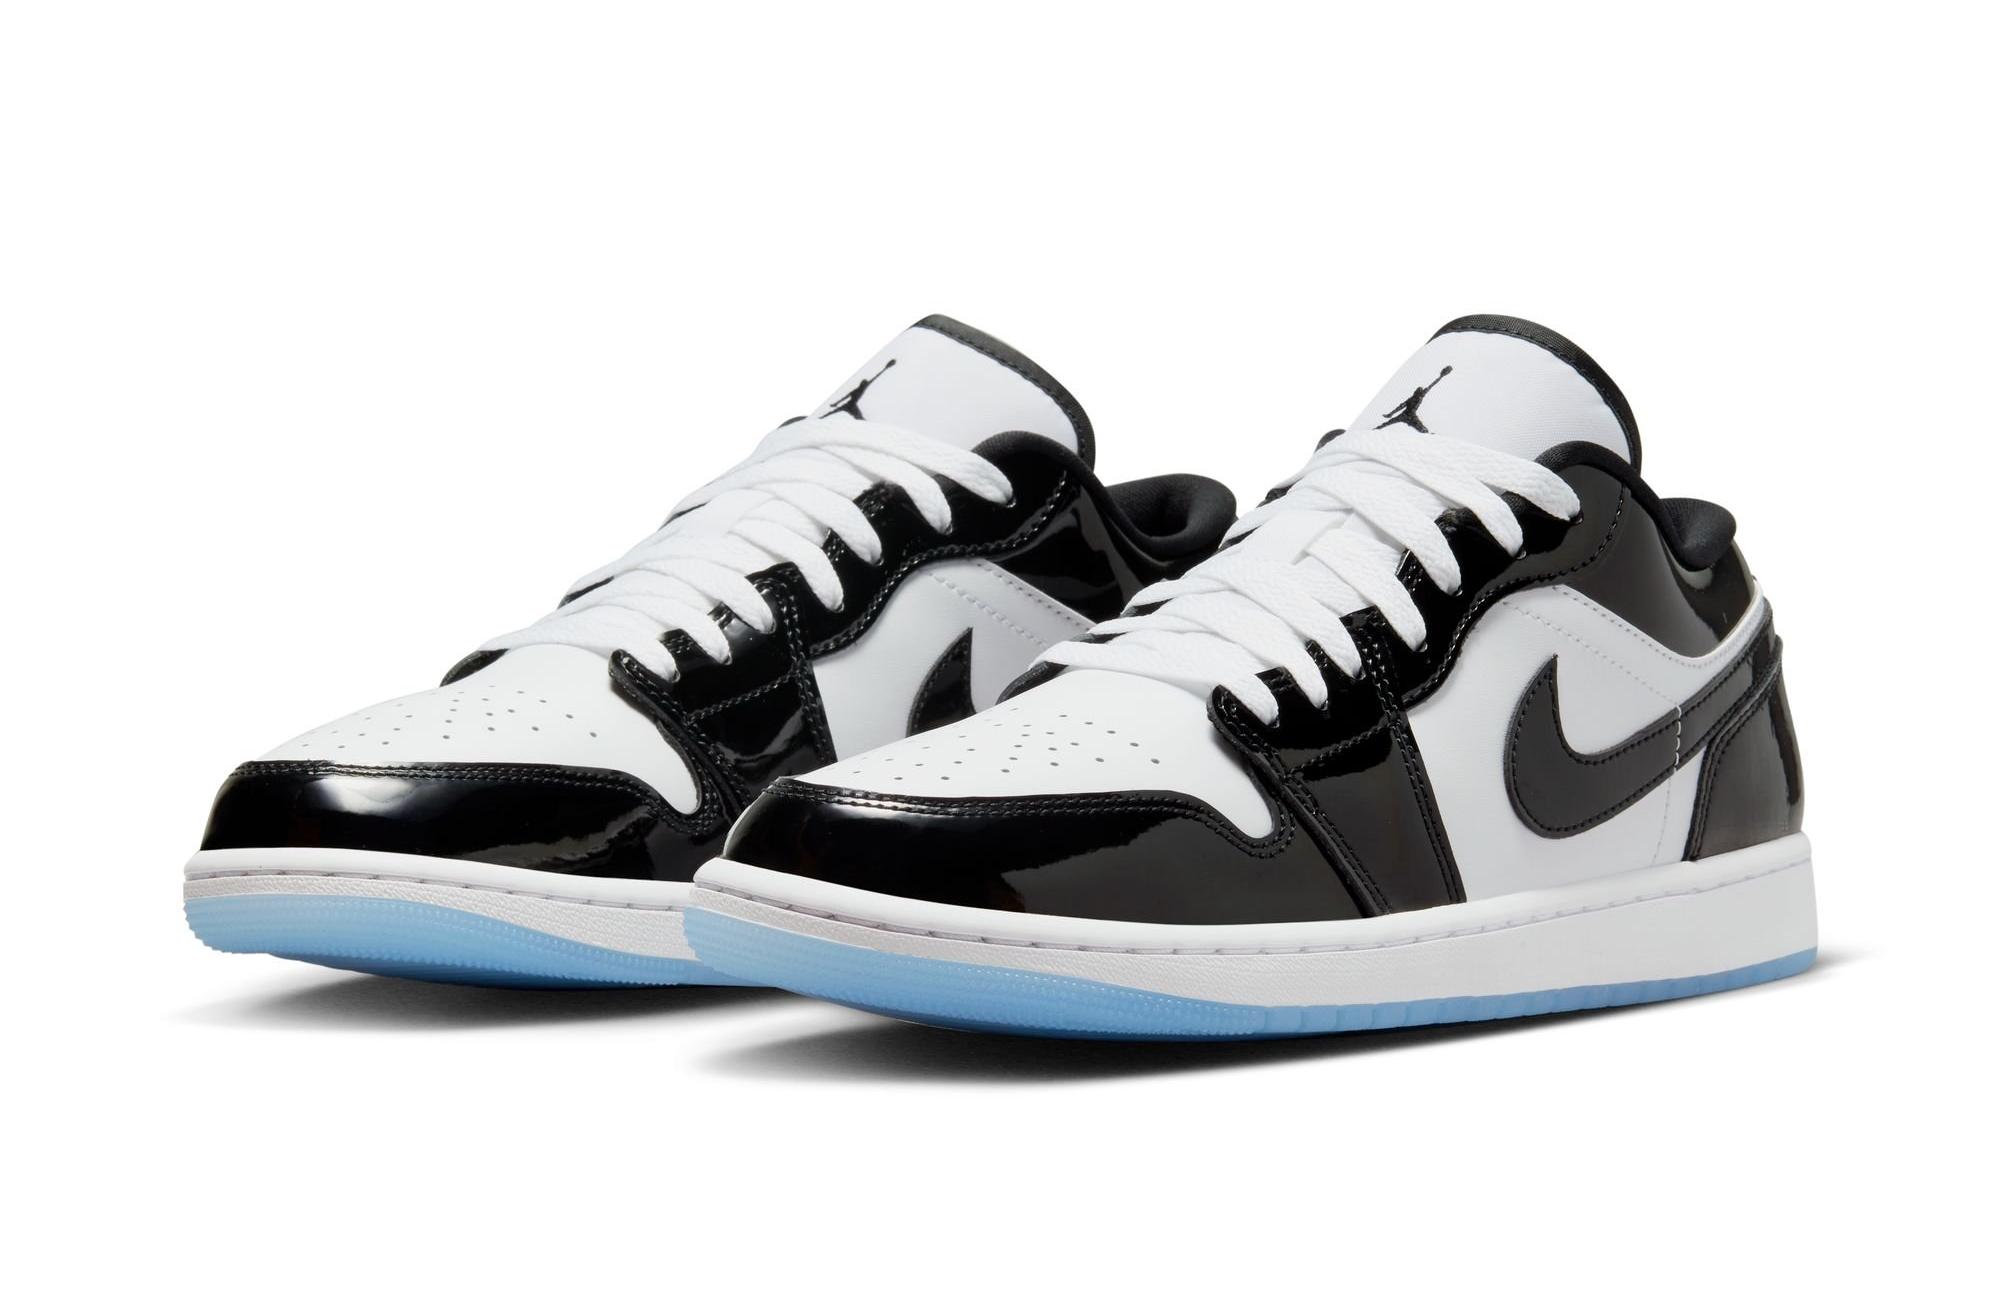 Sneakers Release – Jordan 1 Low Se “White/Black”  Men’S & Grade School Kids’ Shoe Launching 2/10